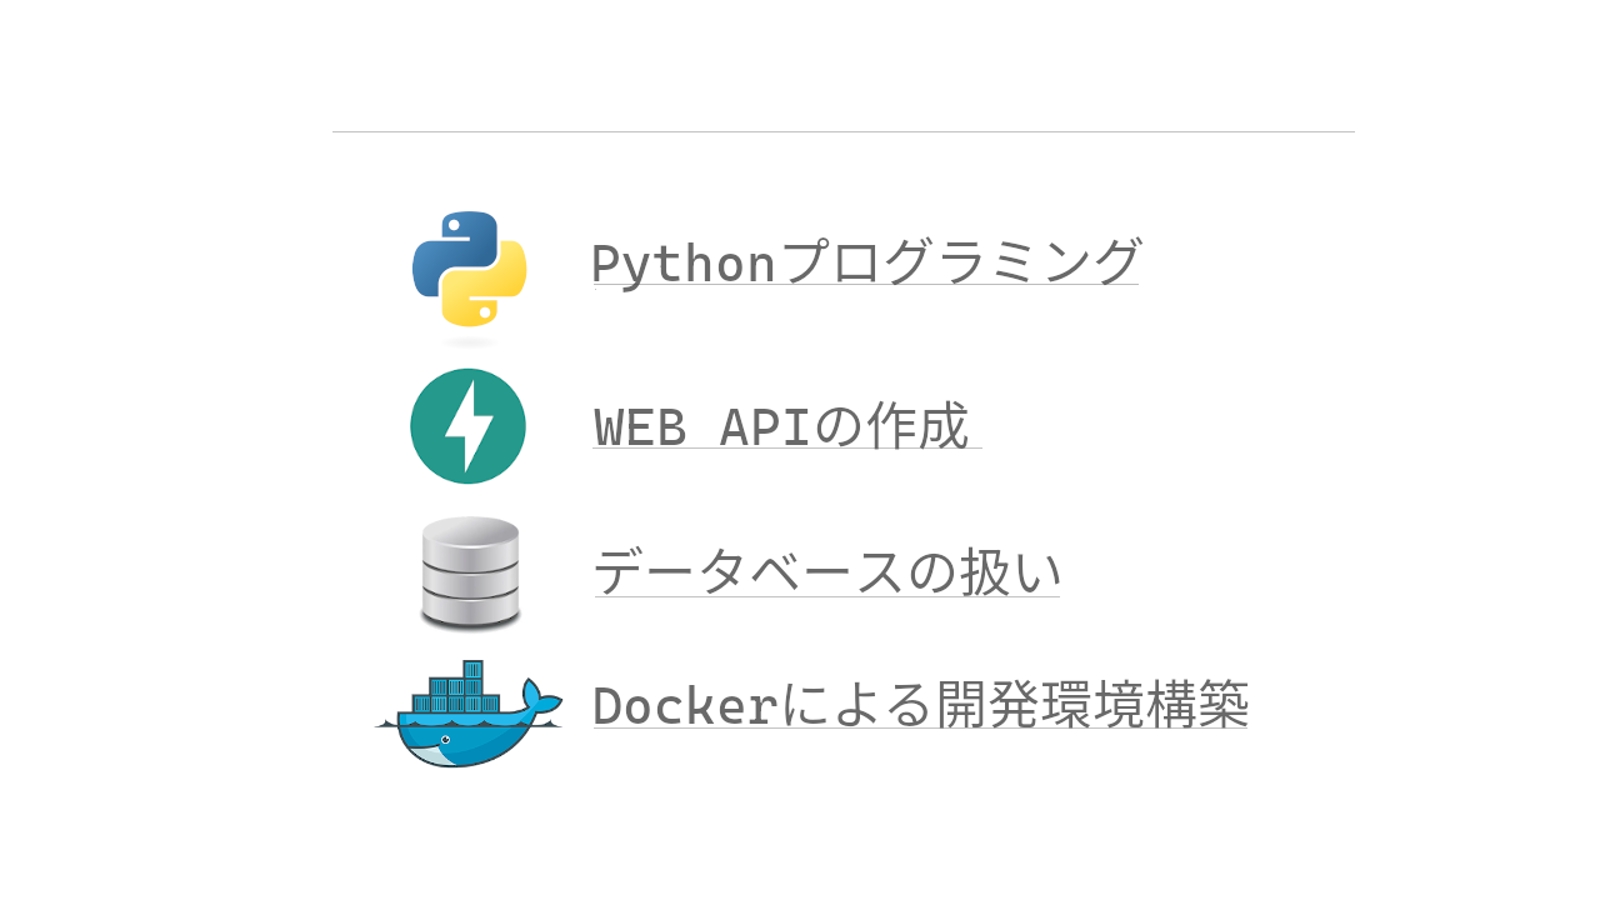 Pythonプログラミングを中心にAPI開発、Docker環境、DB設計などについてサポートします-image1